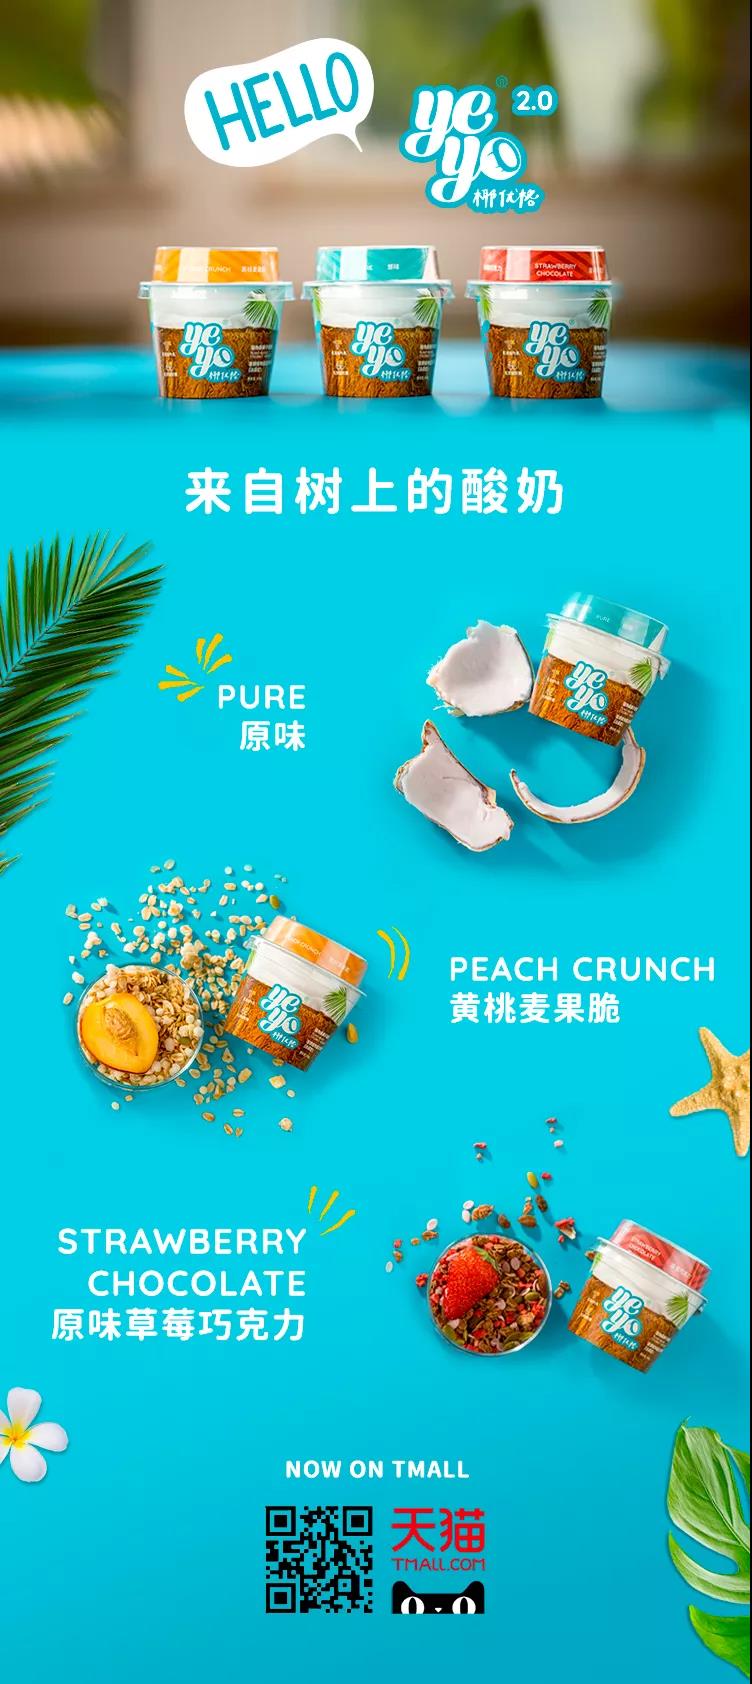 34 27 中国新锐植物基椰子酸奶品牌Yeyo椰优格正式登陆天猫